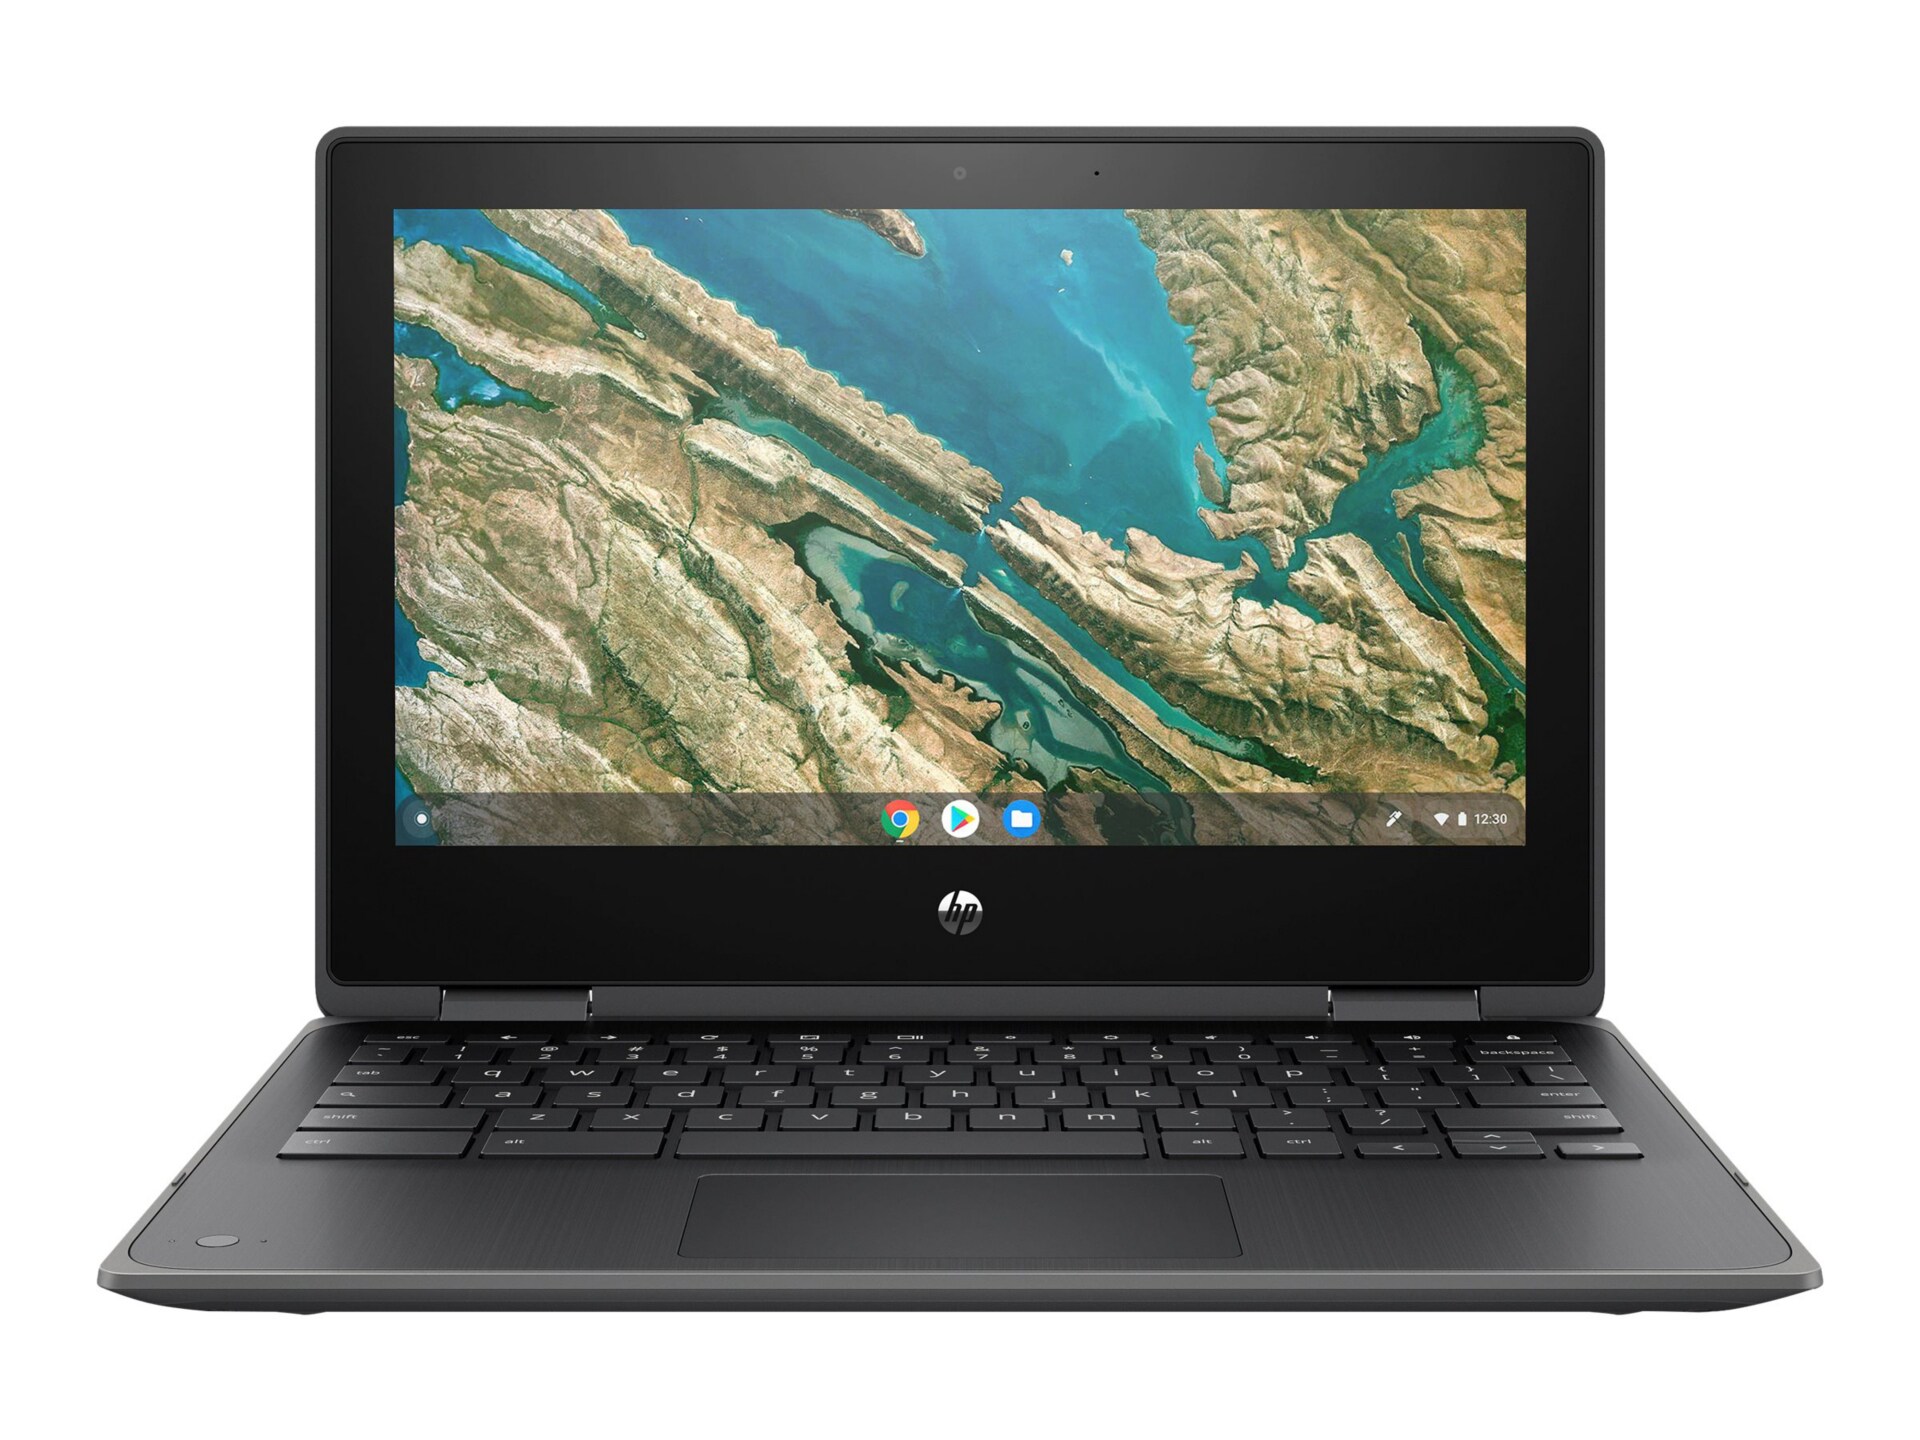 HP Chromebook x360 11 G3 Education Edition - 11.6" - Celeron N4020 - 8 GB RAM - 32 GB eMMC - US